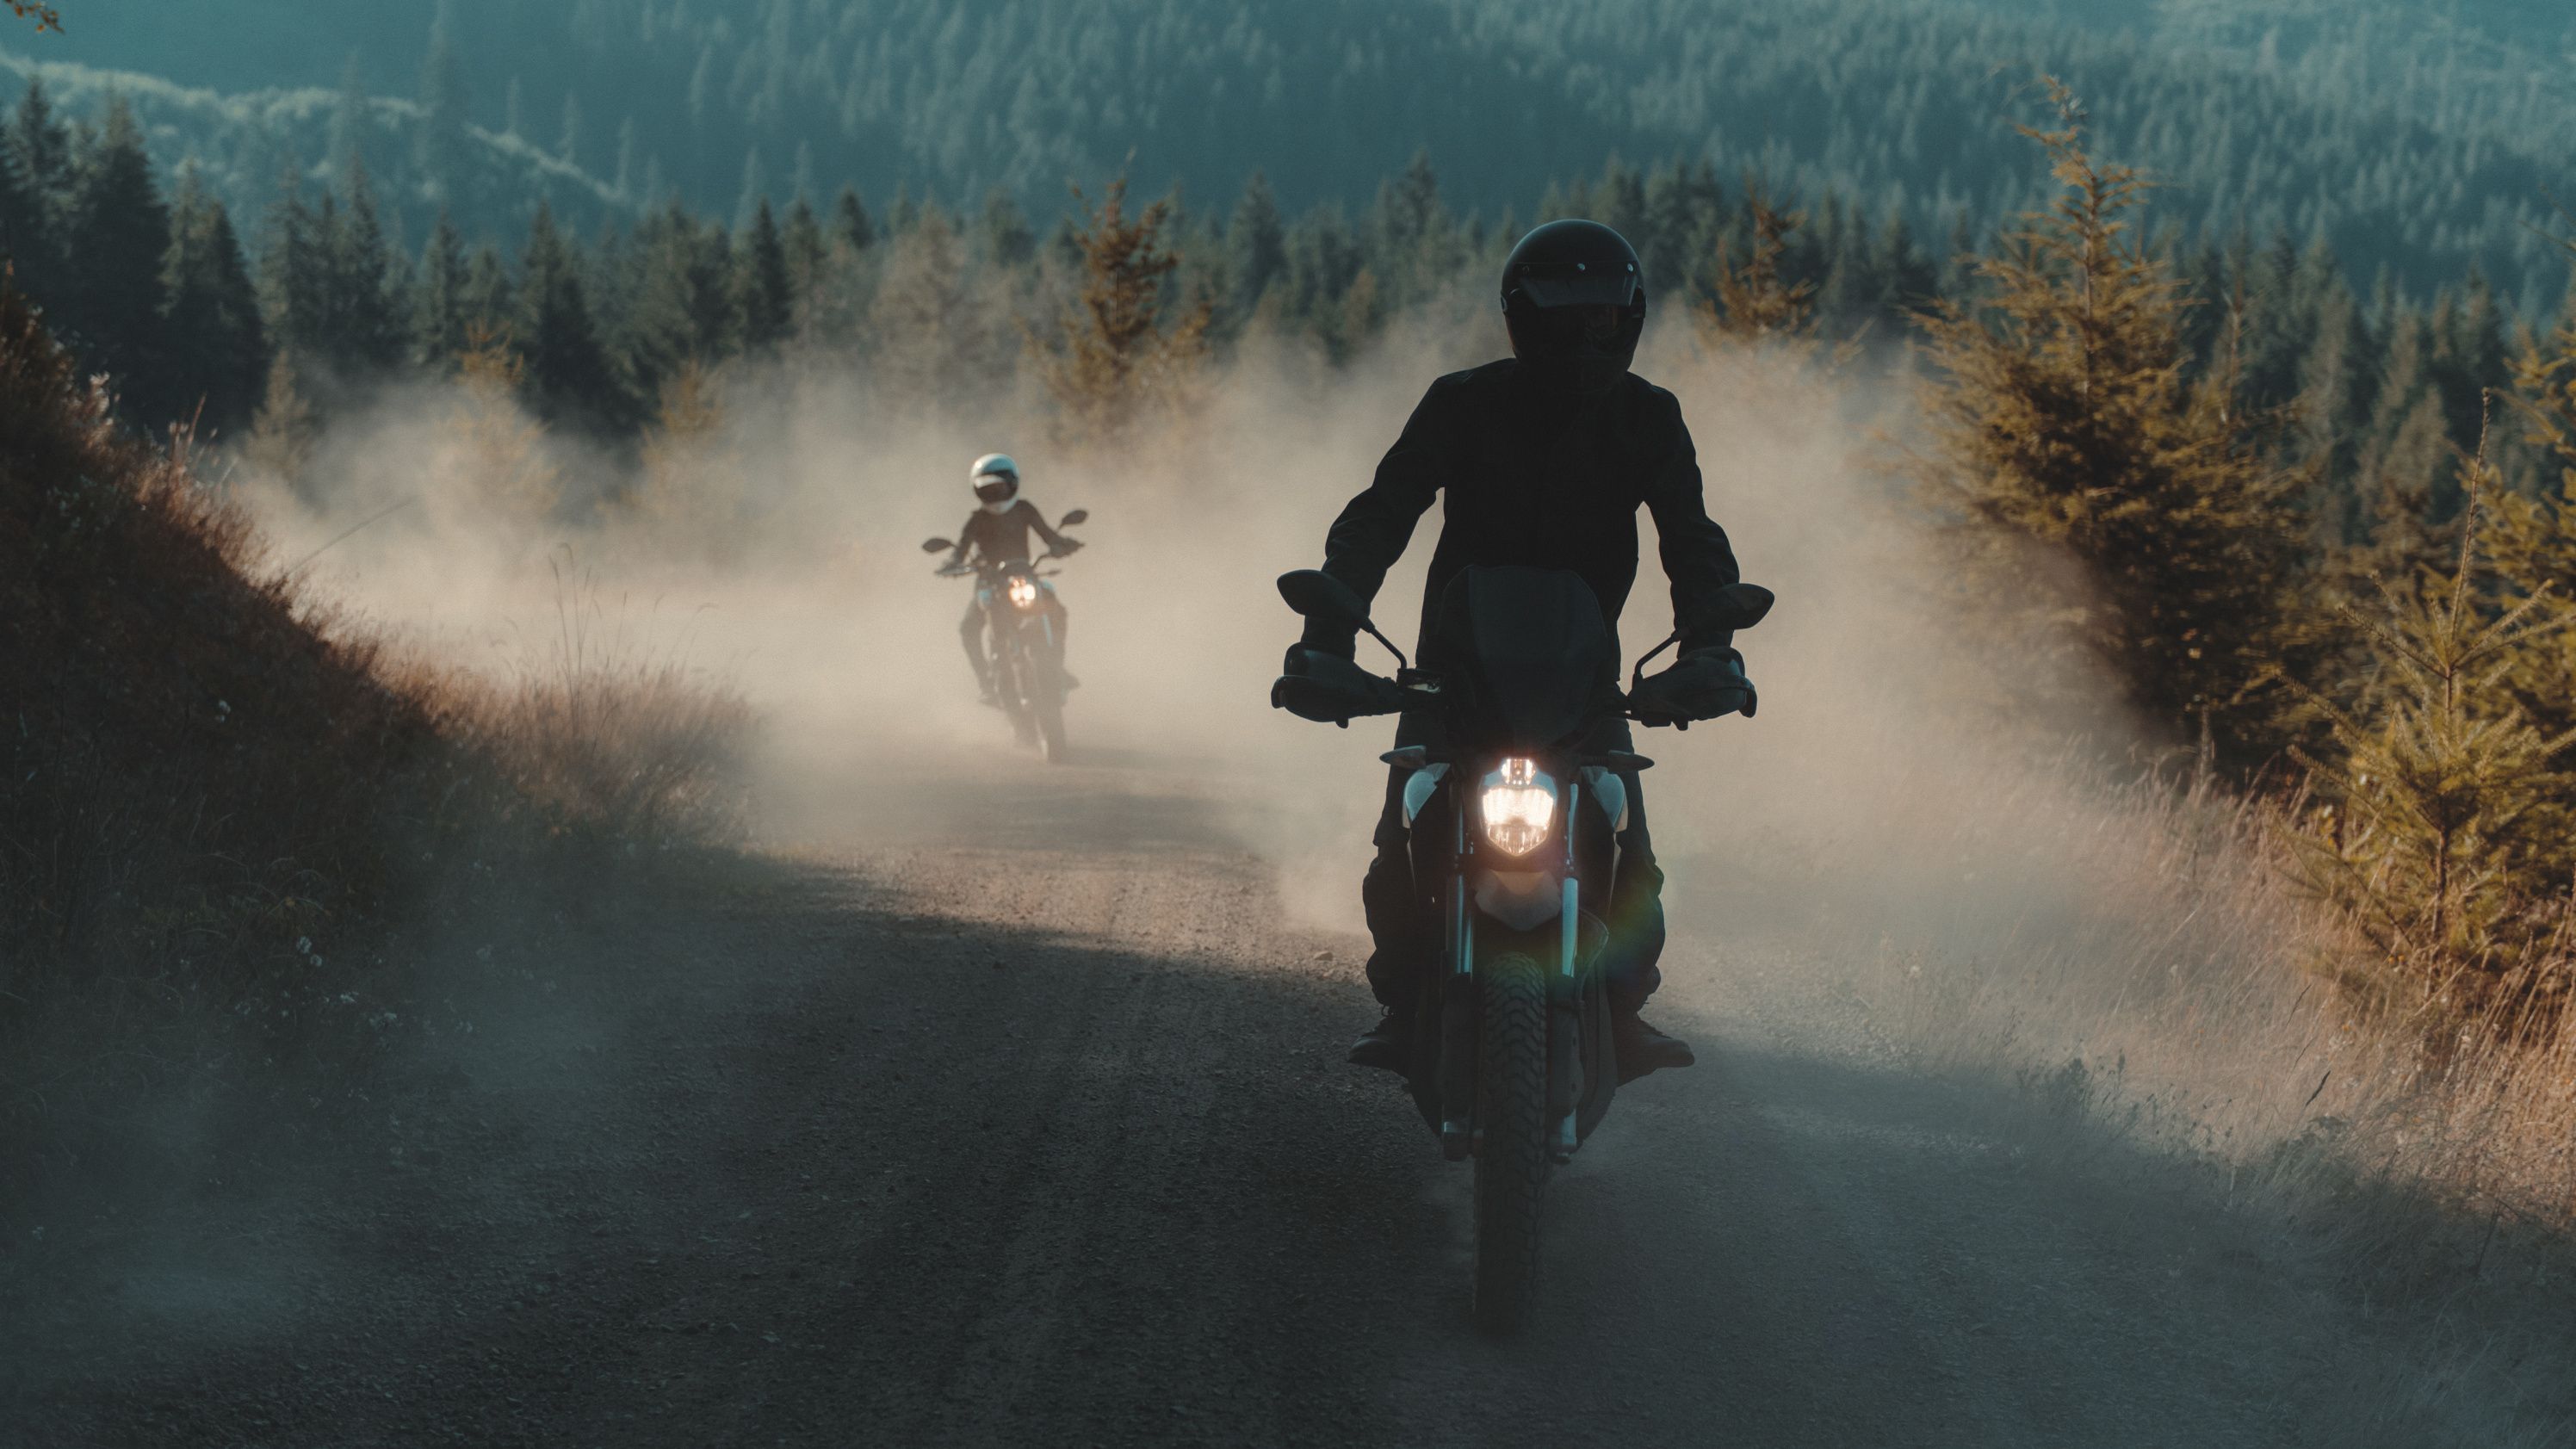 2019 Zero Motorcycles DS / DSR